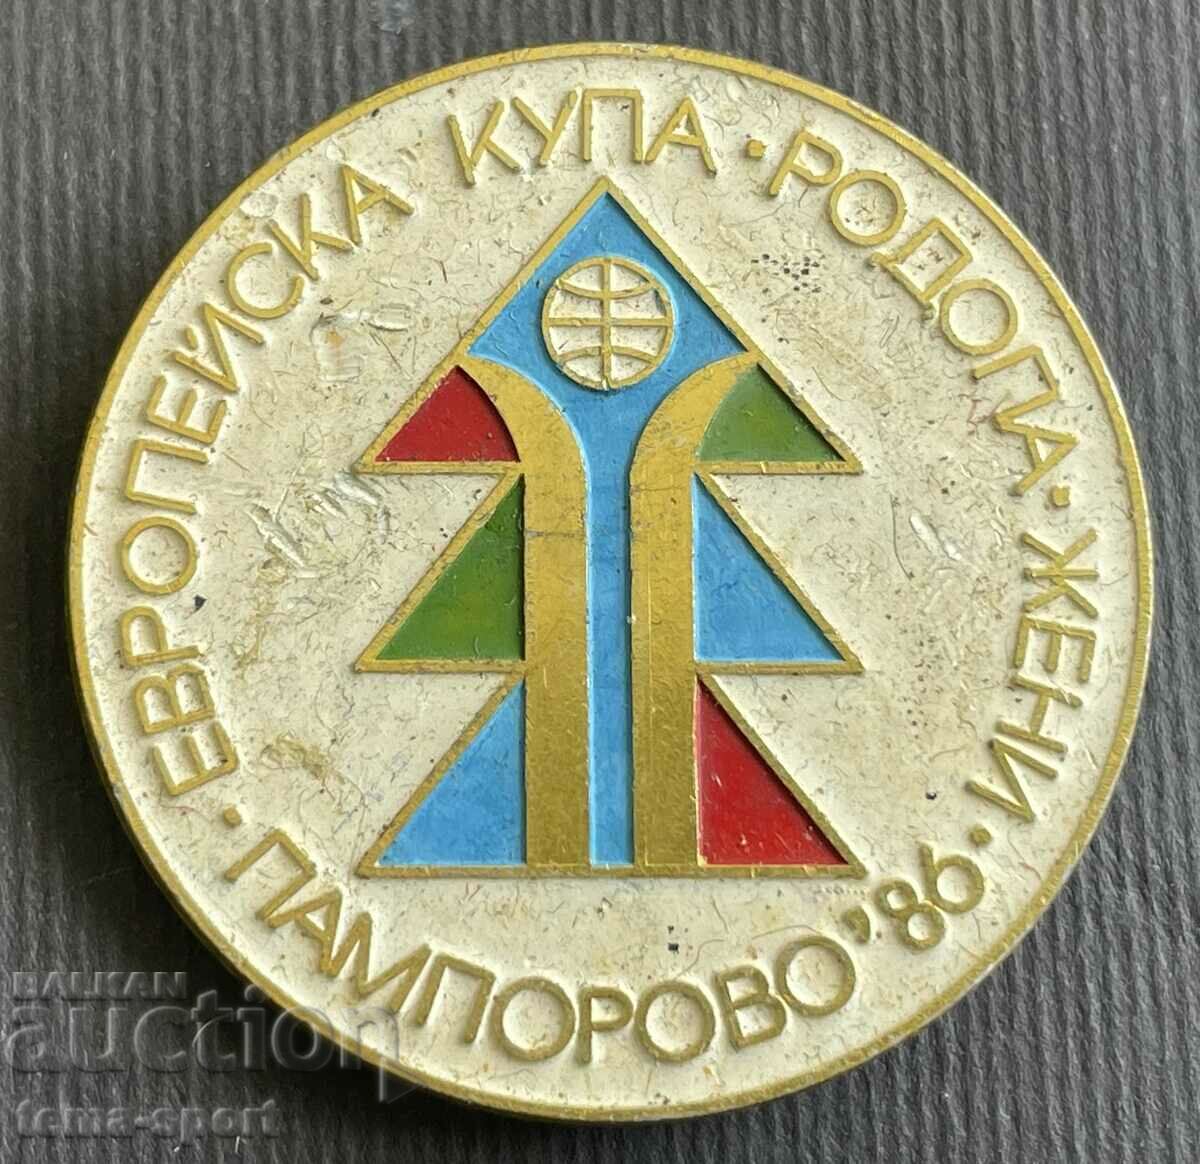 285 Σήμα Βουλγαρίας Ευρωπαϊκό Κύπελλο Σκι Γυναικών Παμπόροβο 1986